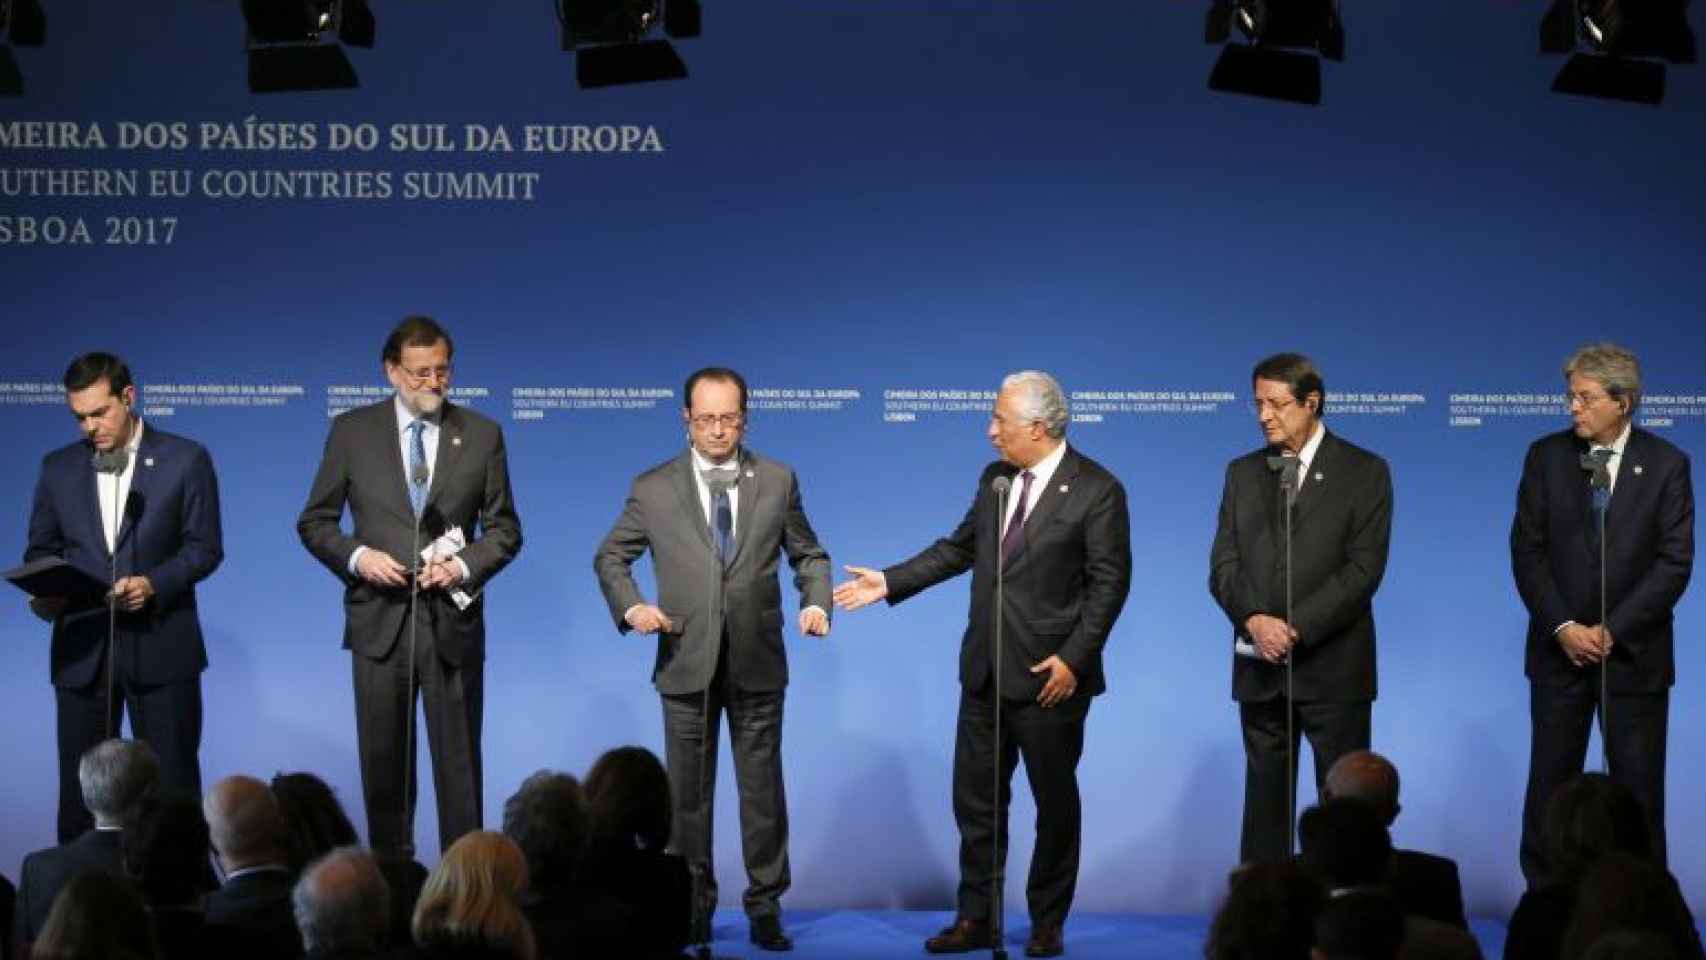 Alexis Tsipras, Mariano Rajoy, François Hollande, António Costa, Nicos Anastasiades y Paolo Gentiloni, en la cumbre de los países del sur de Europa en Lisboa / EFE